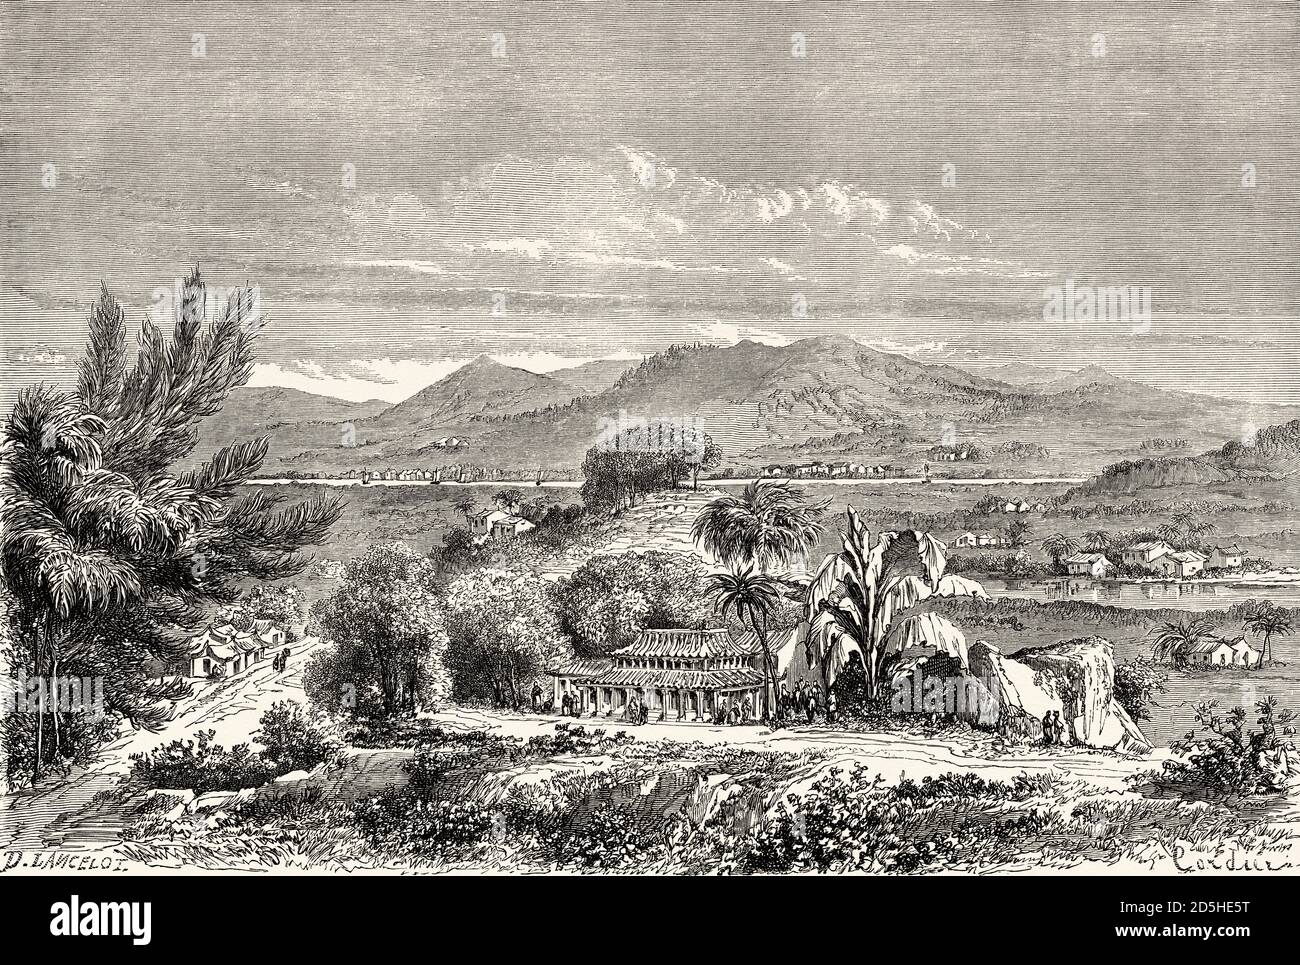 Vue sur la vallée de min près de su-Tscieu, Chine. Voyage gravé du XIXe siècle de Shanghai à Moscou le Tour du monde 1864 Banque D'Images